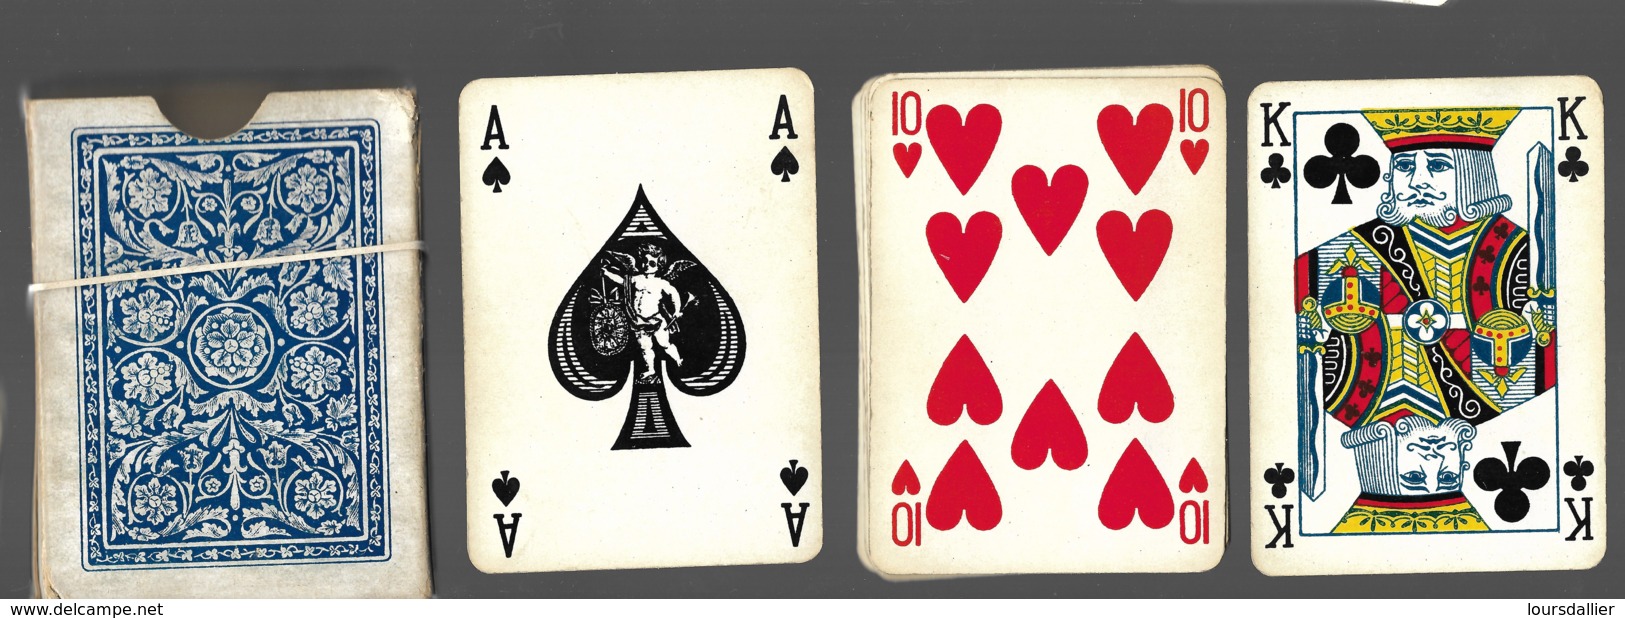 Jeu De 52 Cartes à Jouer Playing Cards Complet Pas De Jocker Dans Son étui Déchiré 2002 Ange As De Pique  13 - Cartes à Jouer Classiques